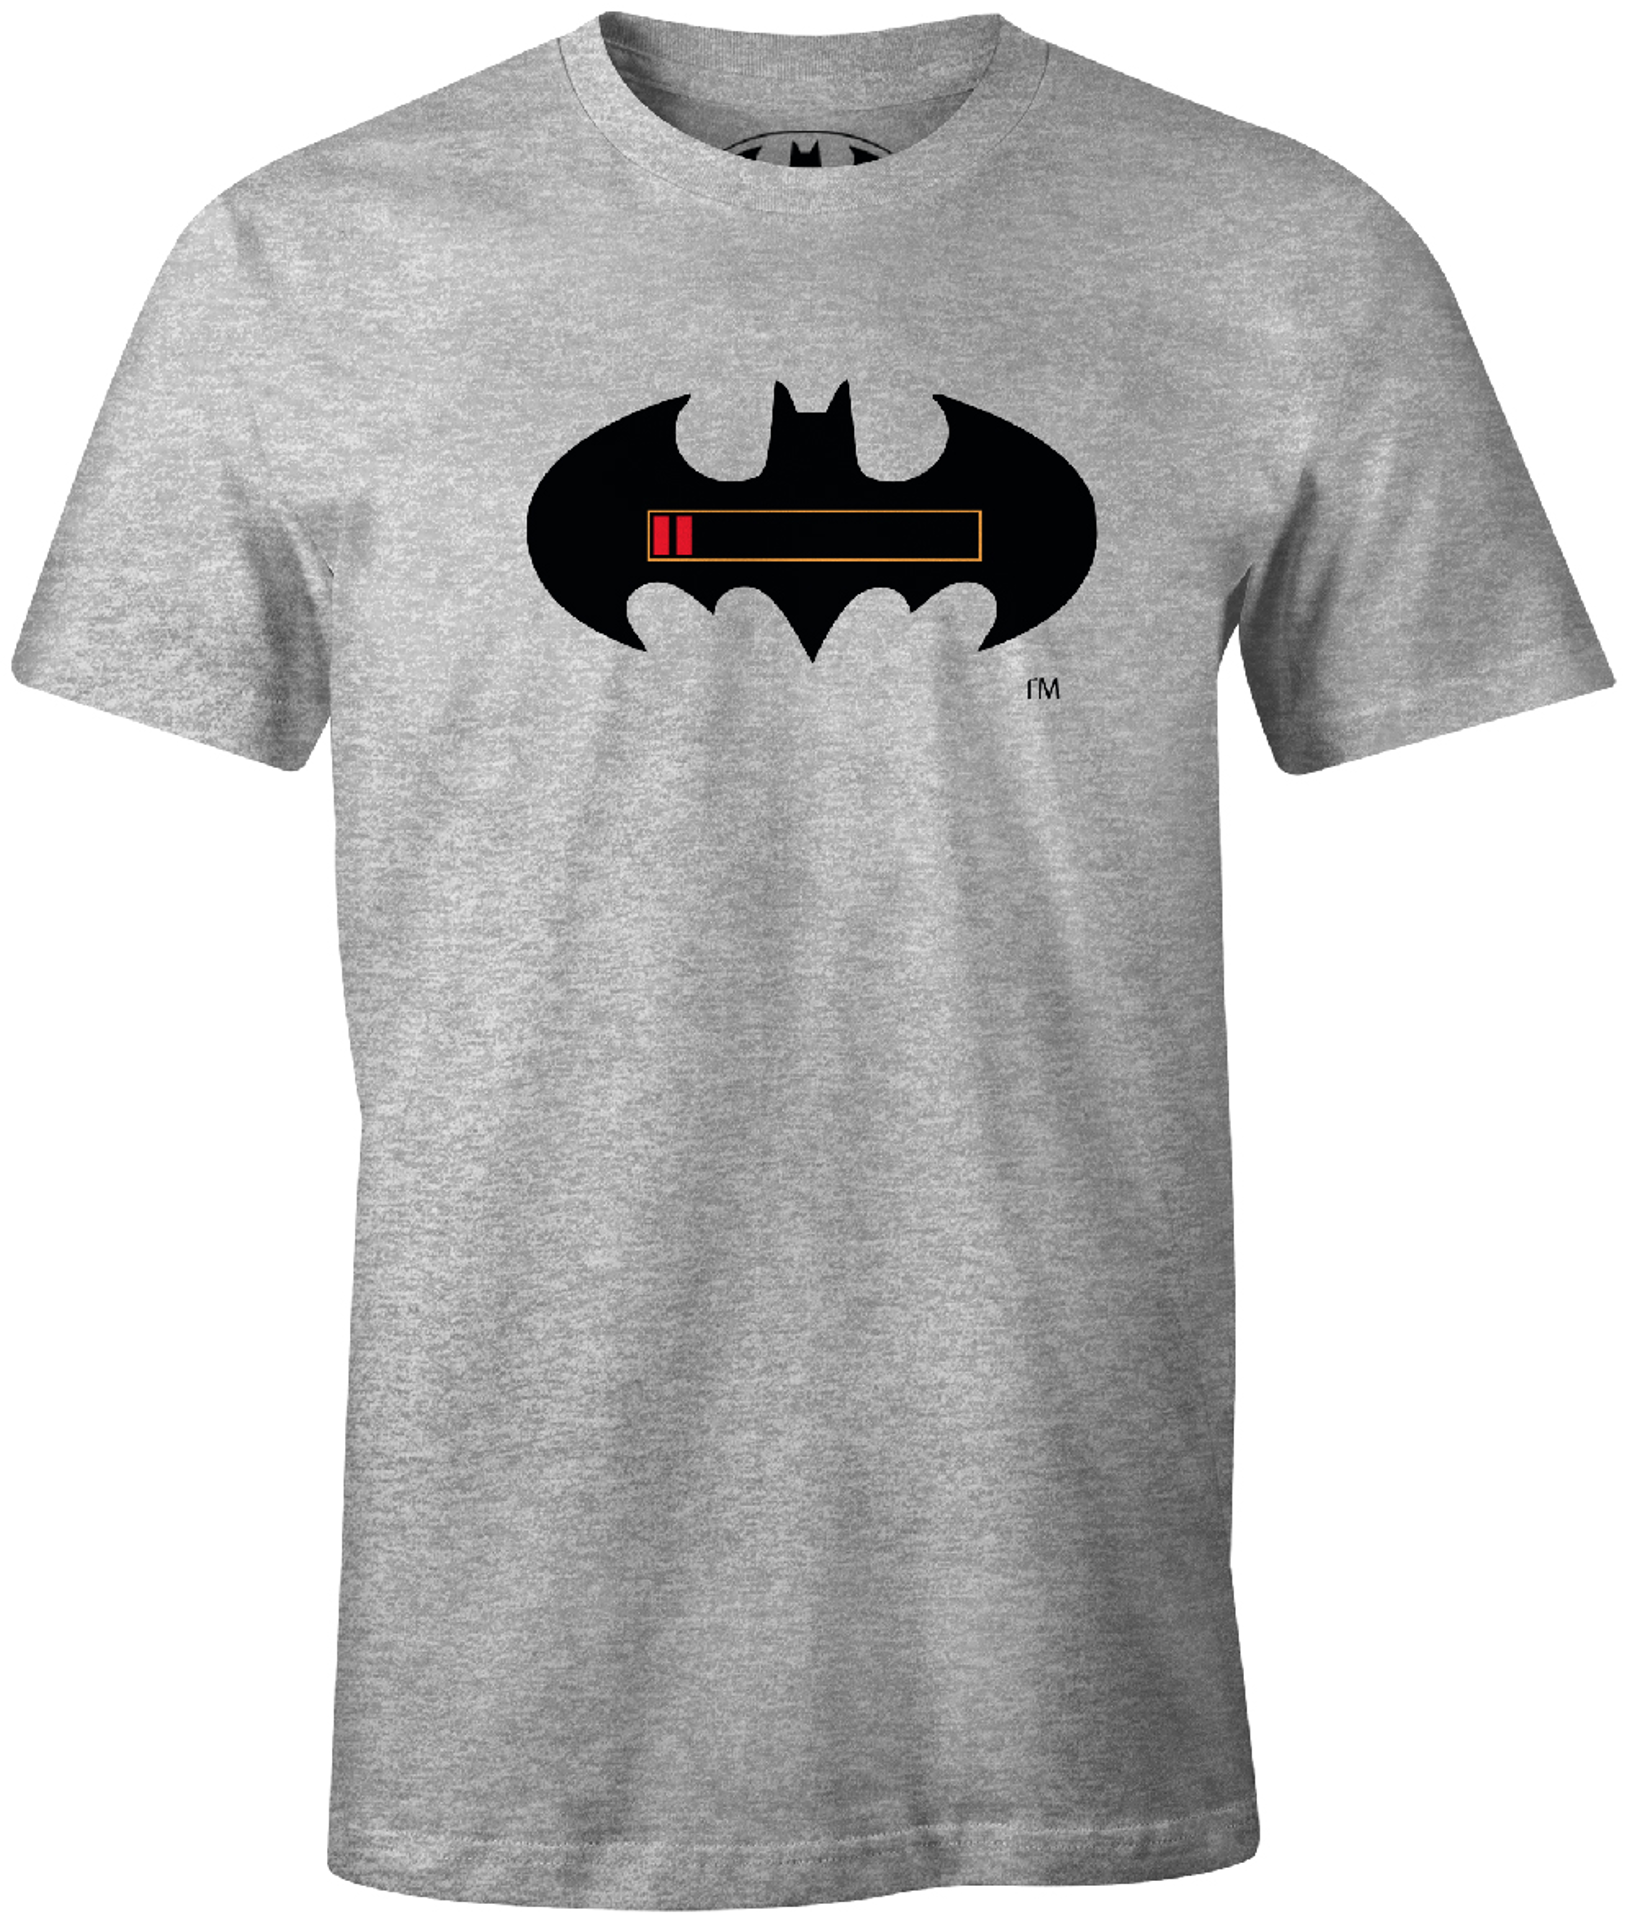 DC Comics - T-Shirt Gris Batman Batterie à plat - M